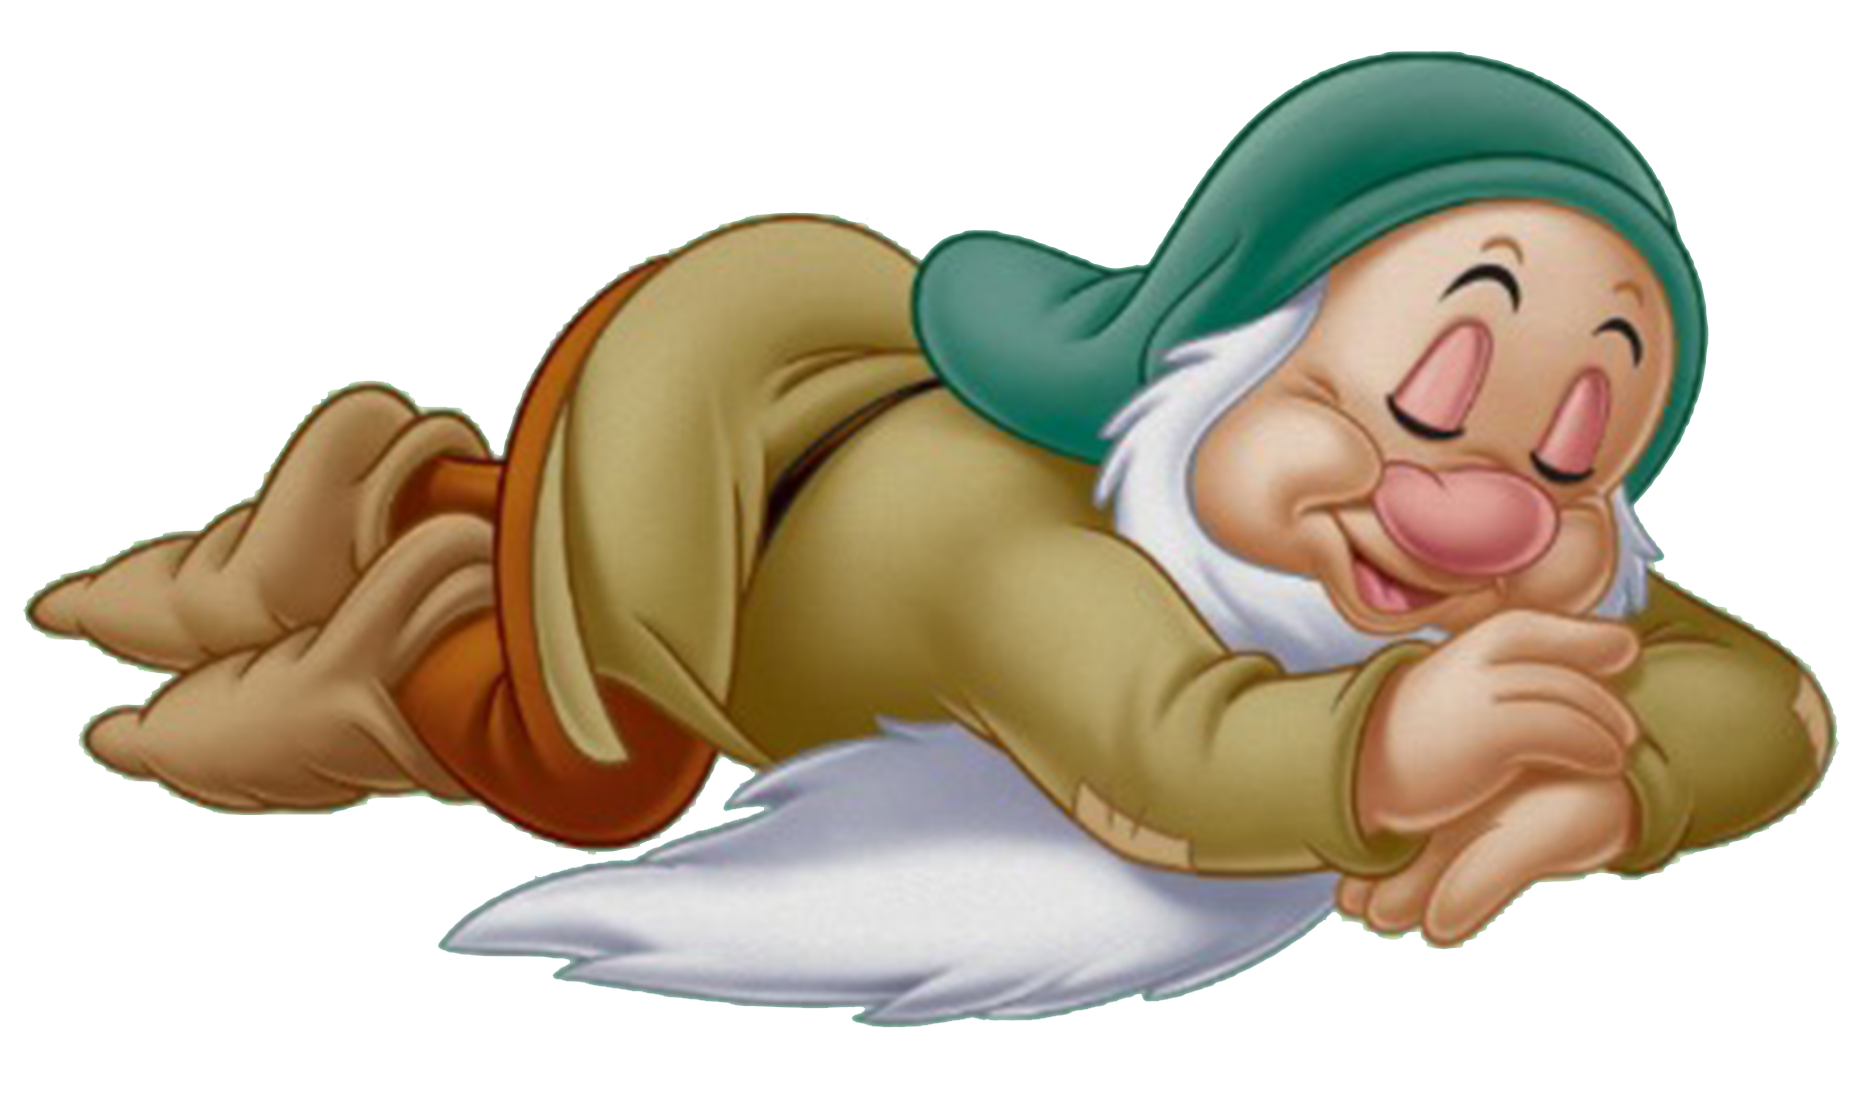 Sleepy | Disney Wiki | FANDOM powered by Wikia